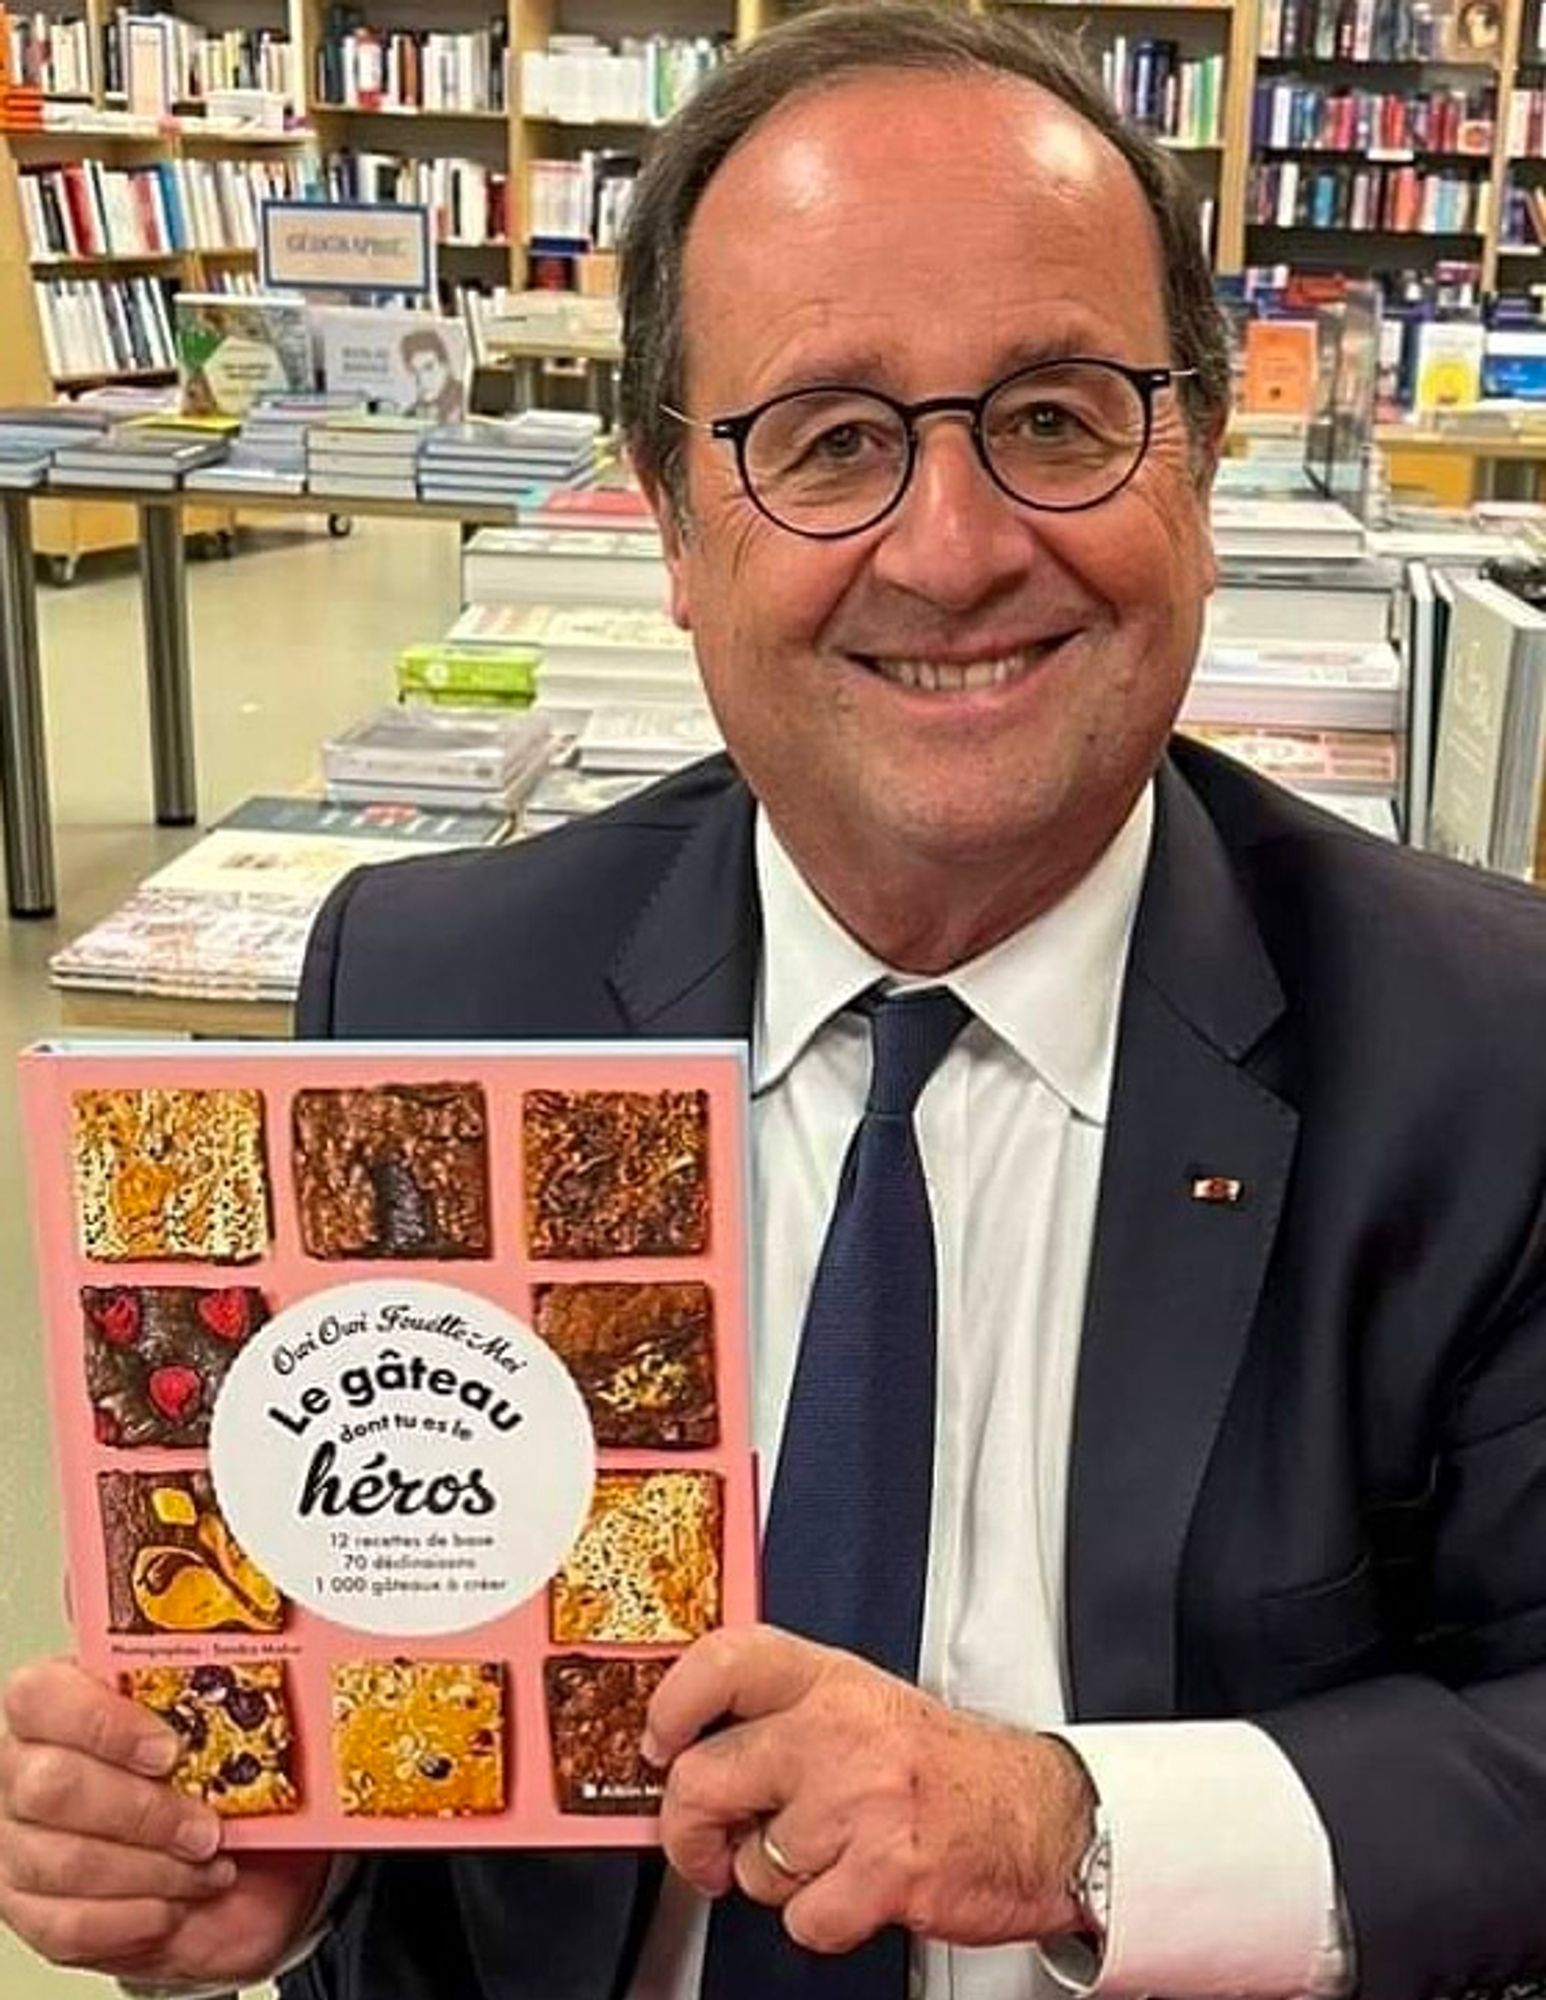 Photographie authentique de François Hollande tenant son exemplaire du premier ouvrage de Owi Owi